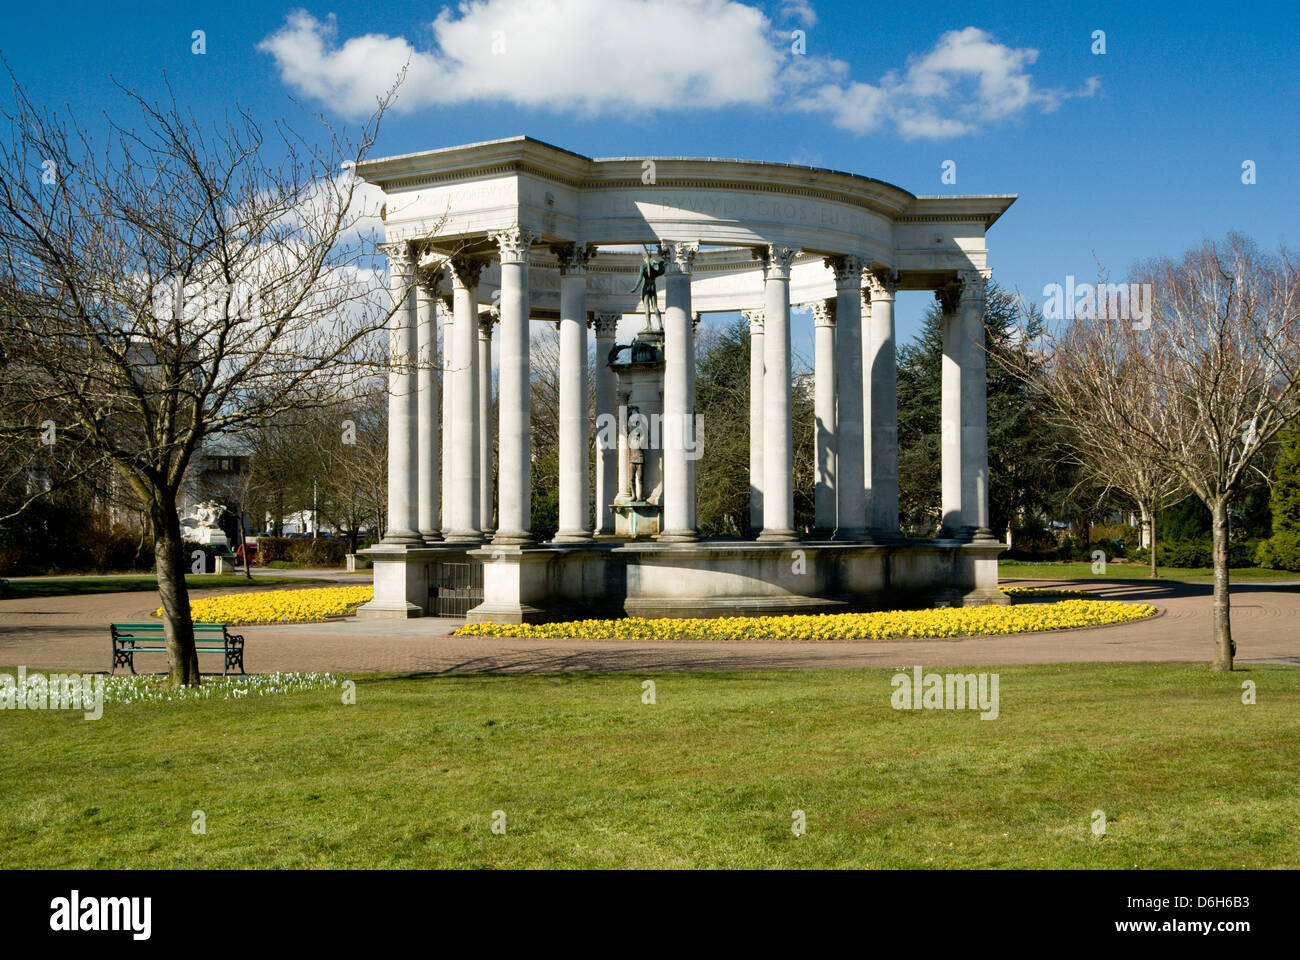 Monument commémoratif de guerre, Alexandra Gardens, Cathays Park, Cardiff, Pays de Galles. Banque D'Images